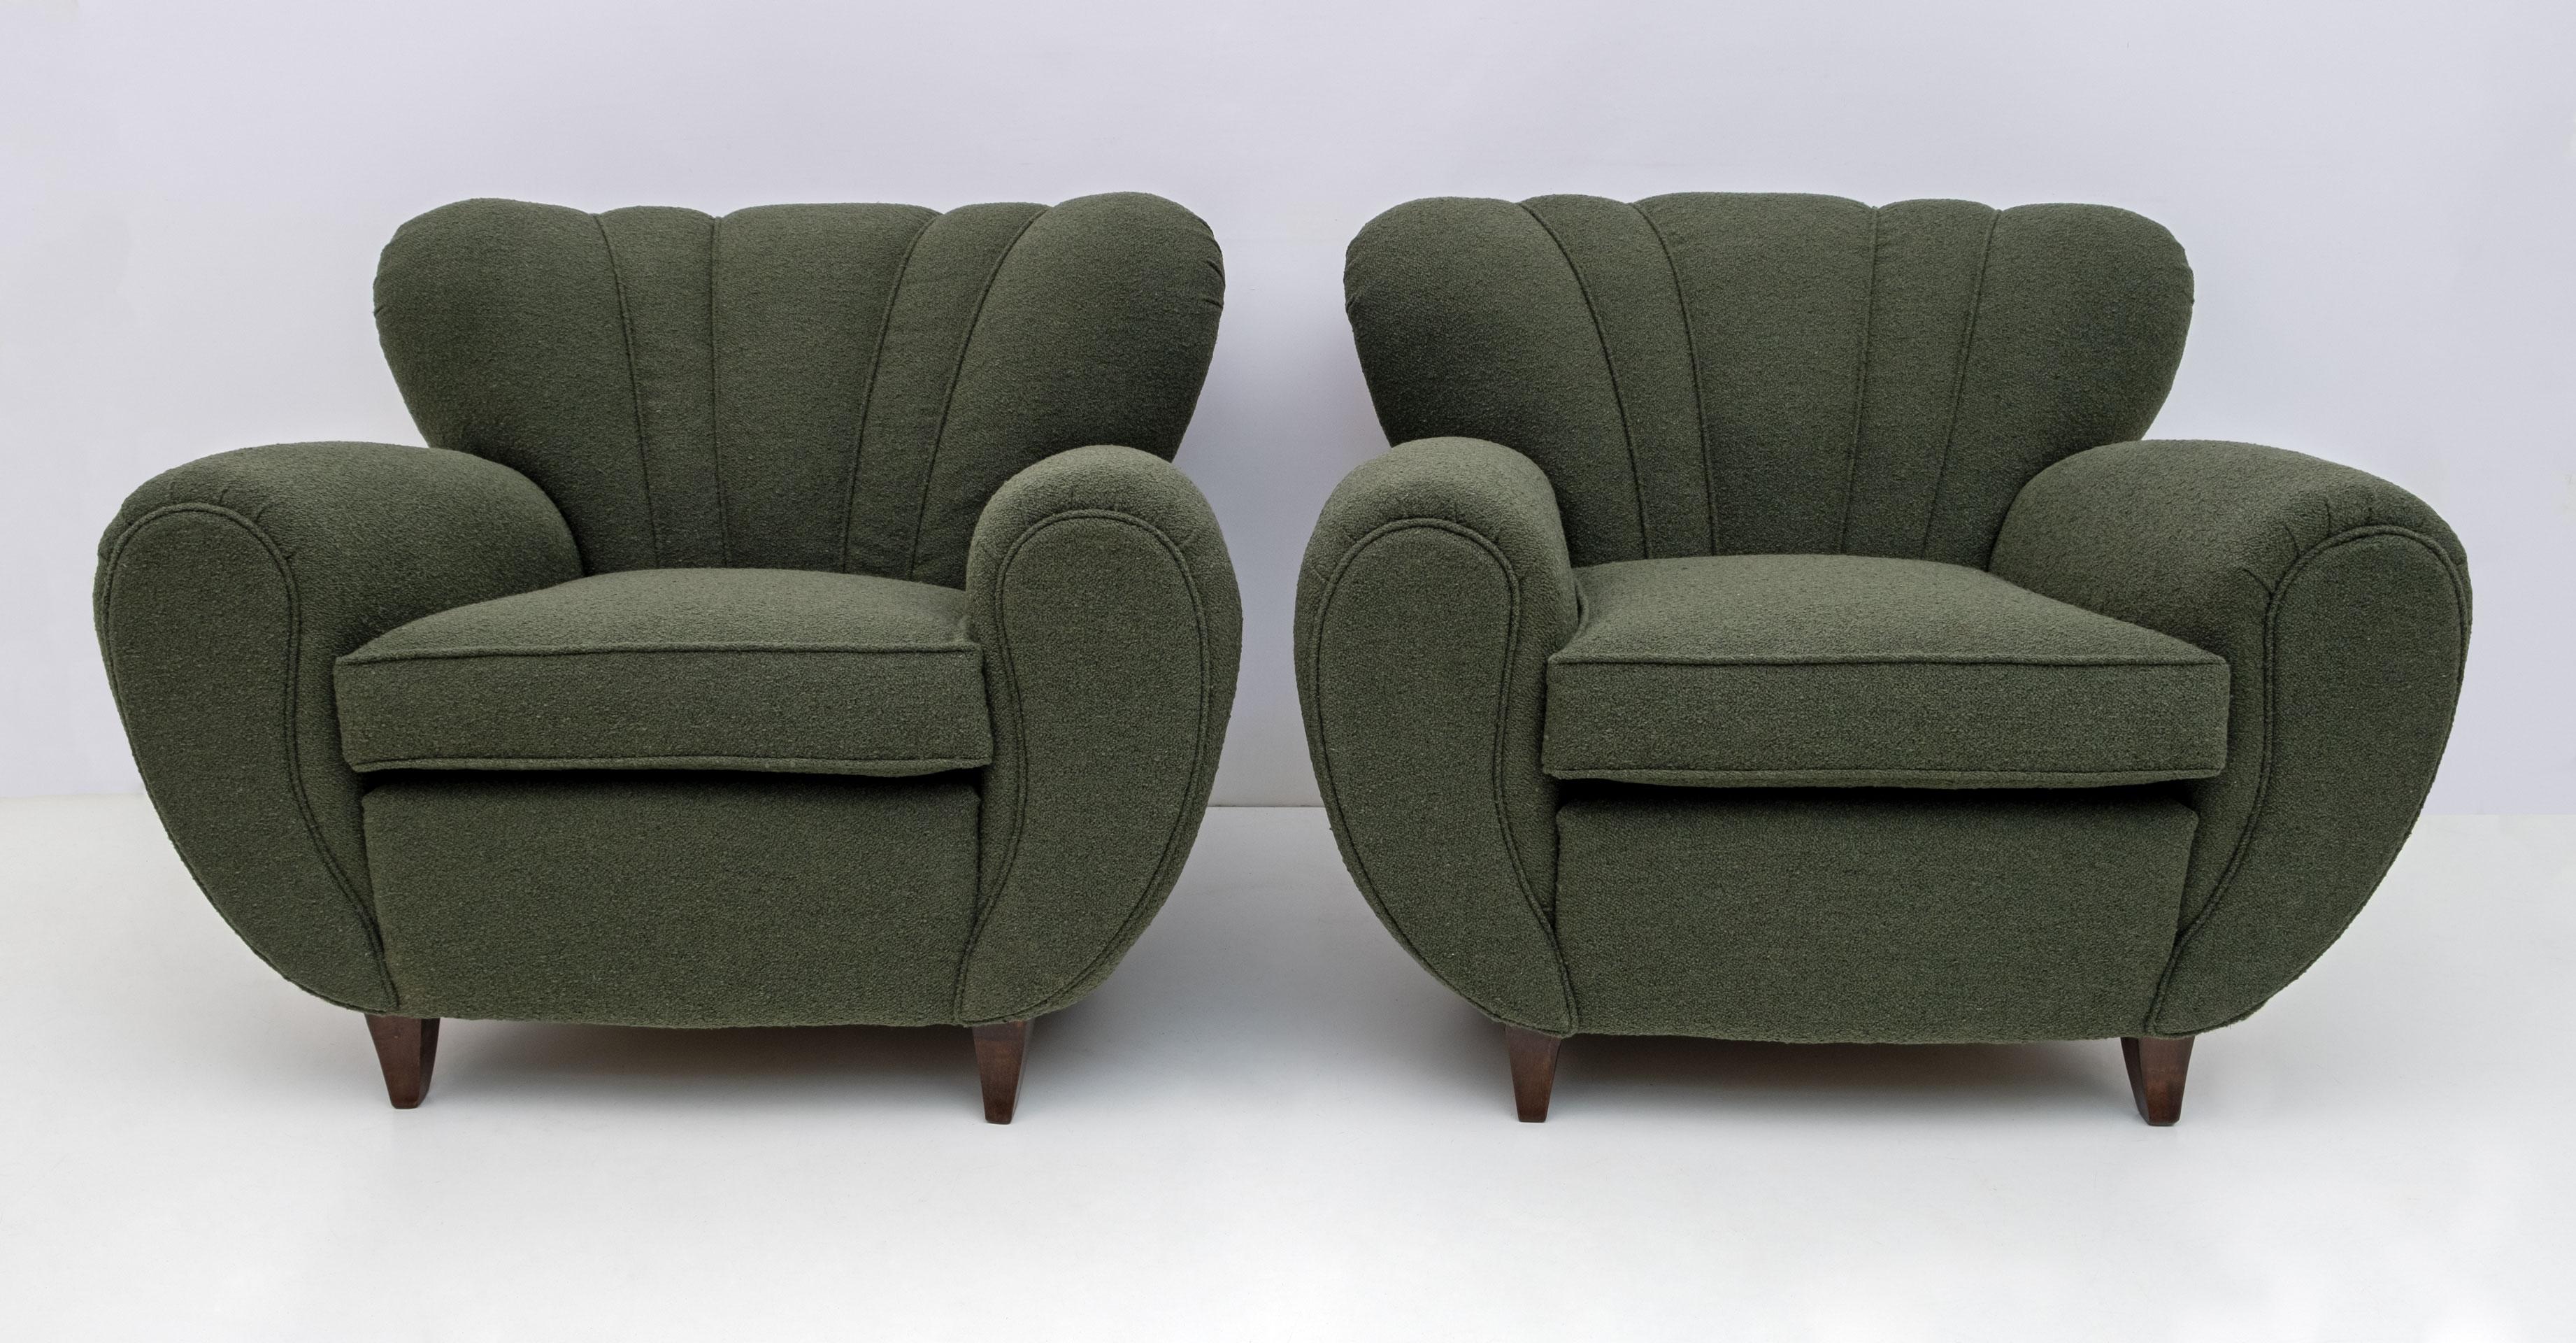 Paar italienische skulpturale Sessel entworfen zugeschrieben Guglielmo Ulrich, sehr komfortabel. Kürzlich mit grünem Bouclè bezogen und mit einer Borte aus dem Stoff selbst versehen, um die geschwungenen Formen zu betonen. Die spitz zulaufenden und